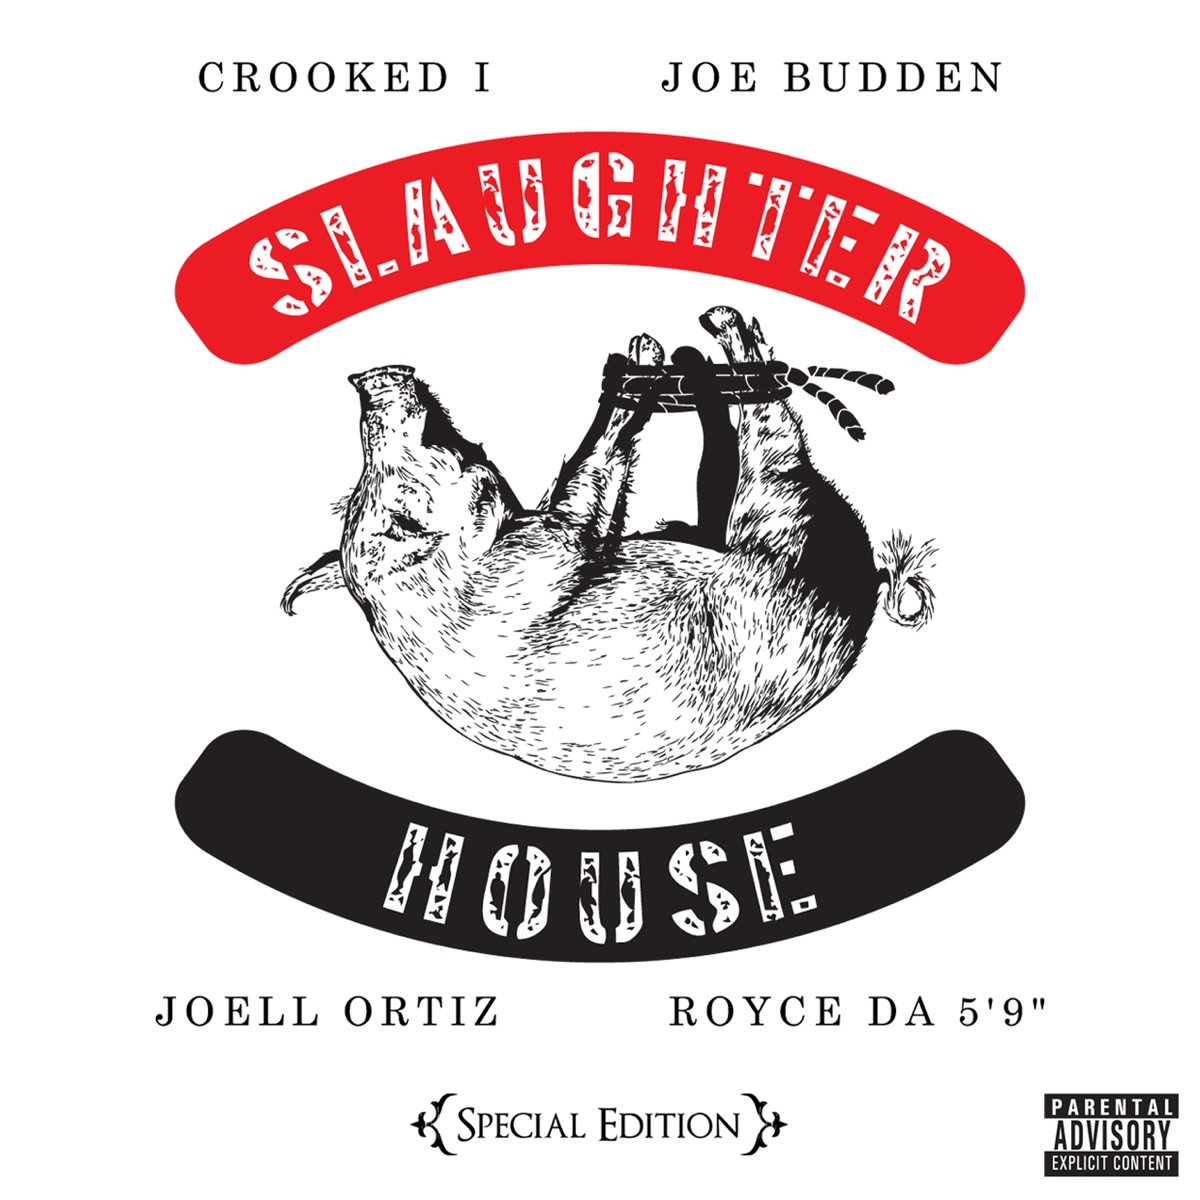 Slaughterhouse – Lyrical Murderers Lyrics